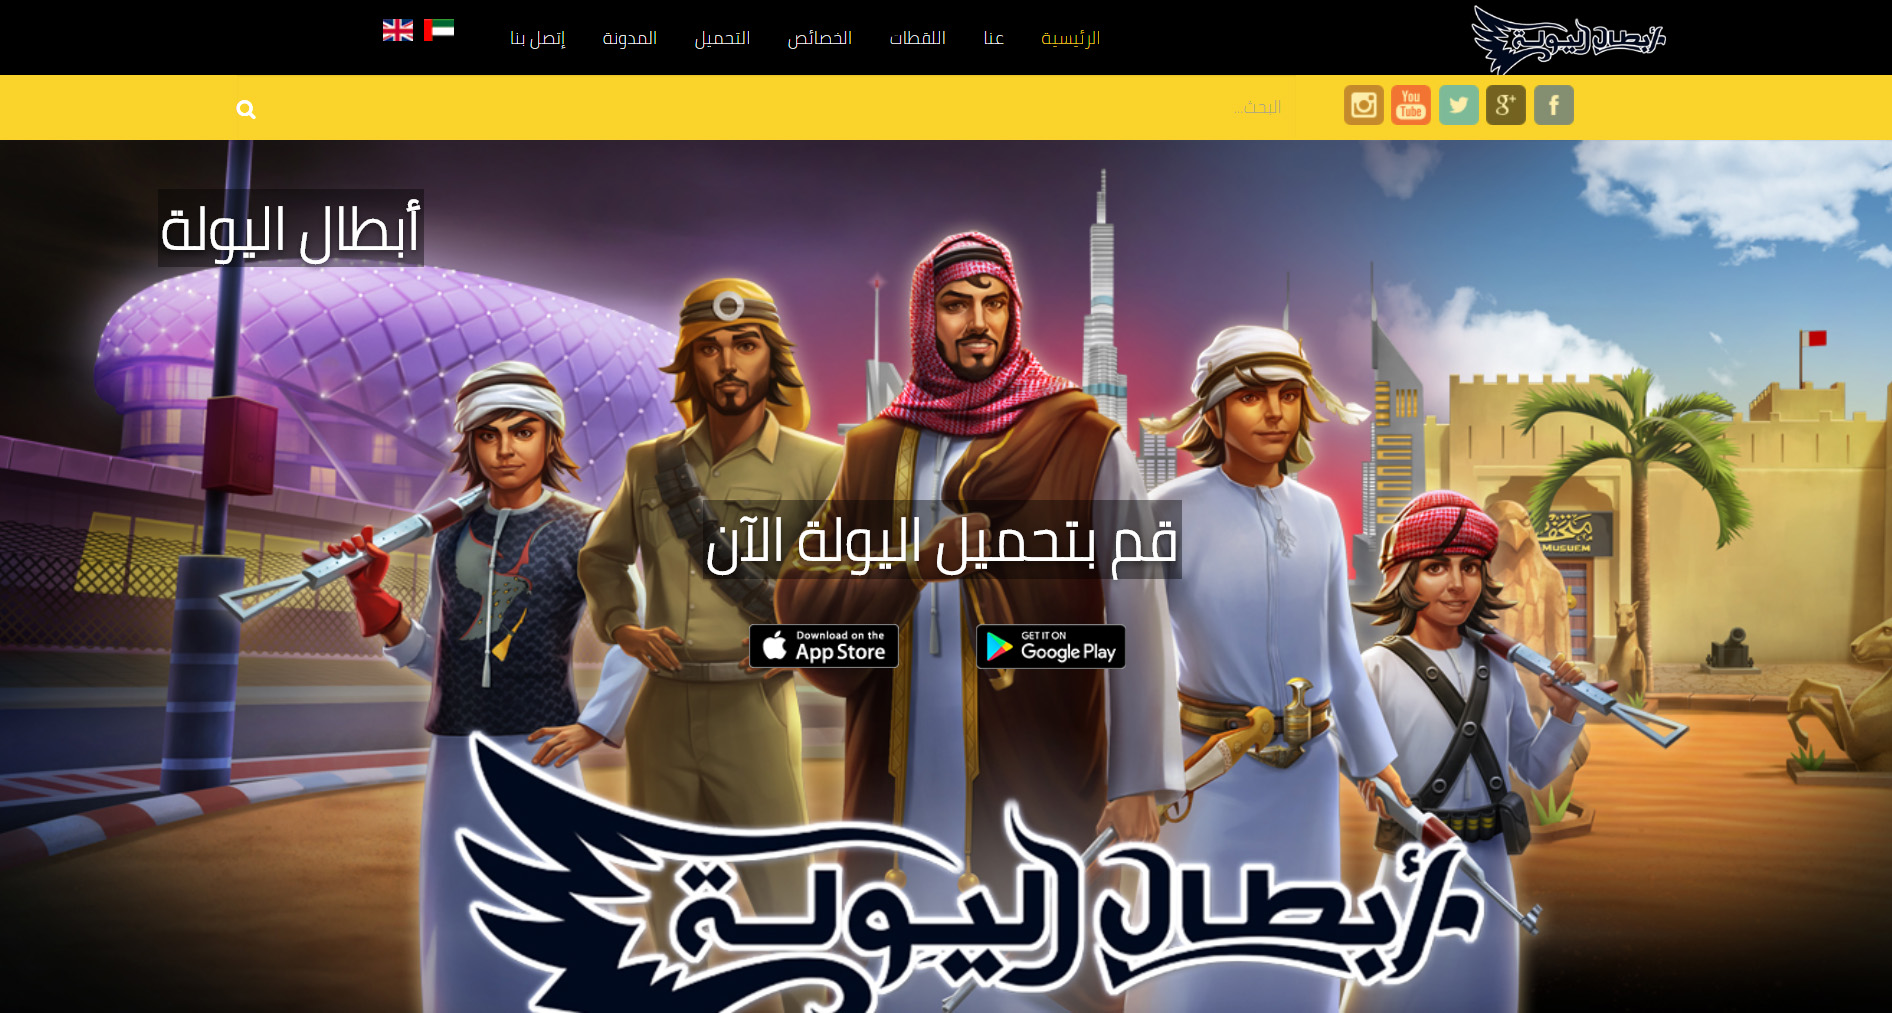 تصميم موقع الكتروني خاص بلعبة أبطال اليولة فى جدة السعودية